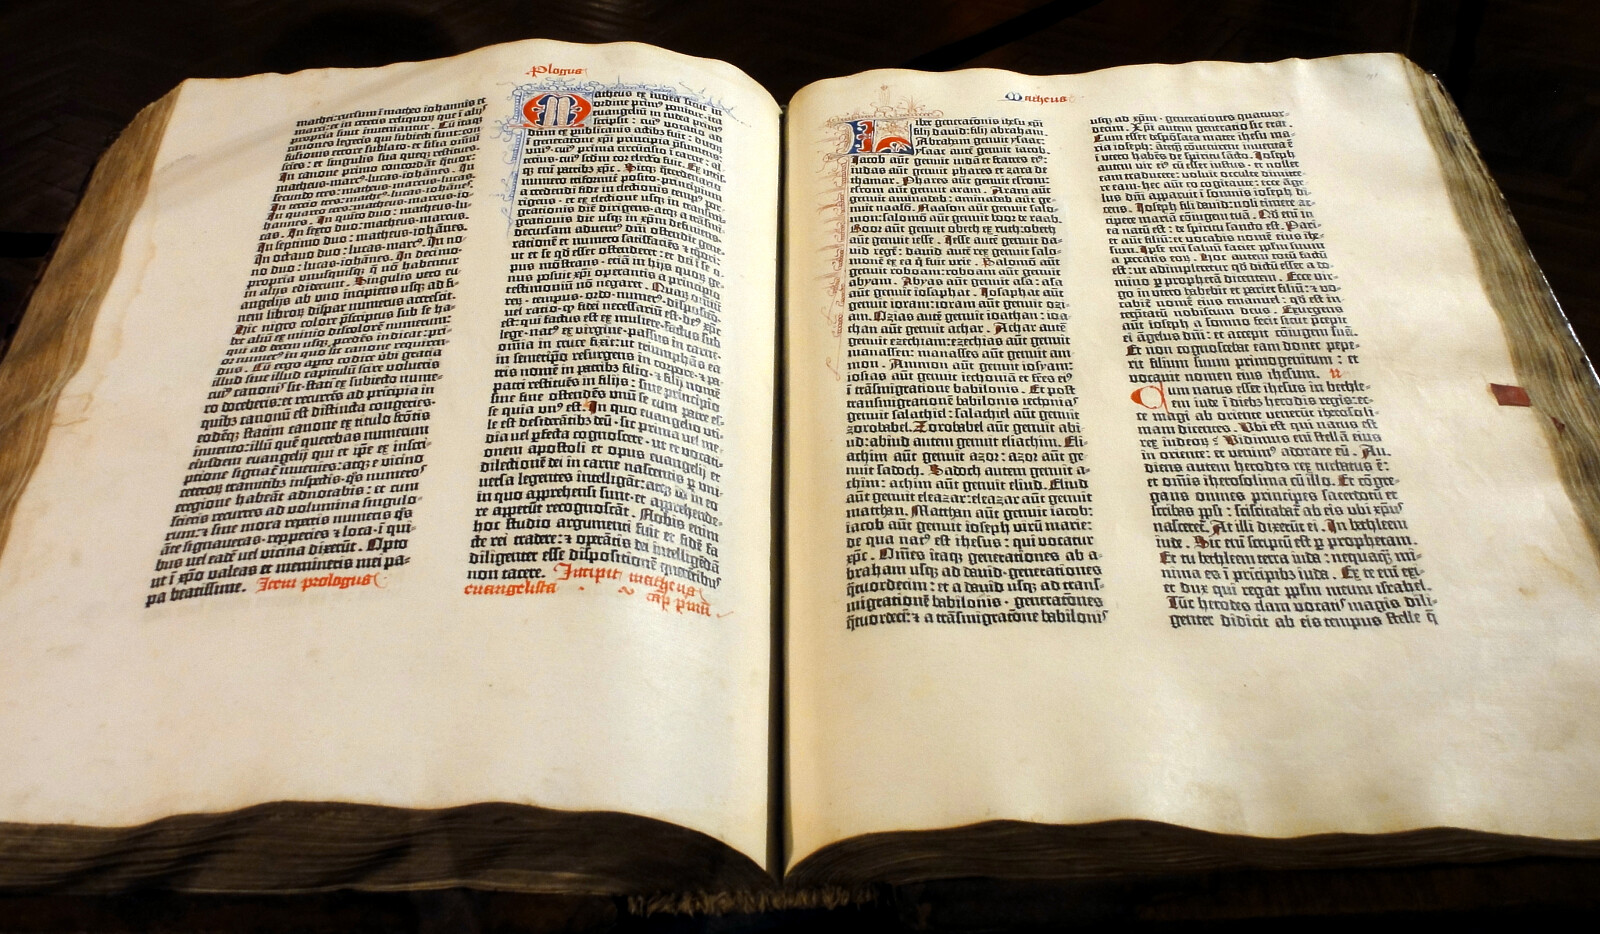 Biblia Gutenberga z muzeum w Pelplinie - Kpalion, CC BY-SA 4.0 www.creativecommons.org, via Wikimedia Commons